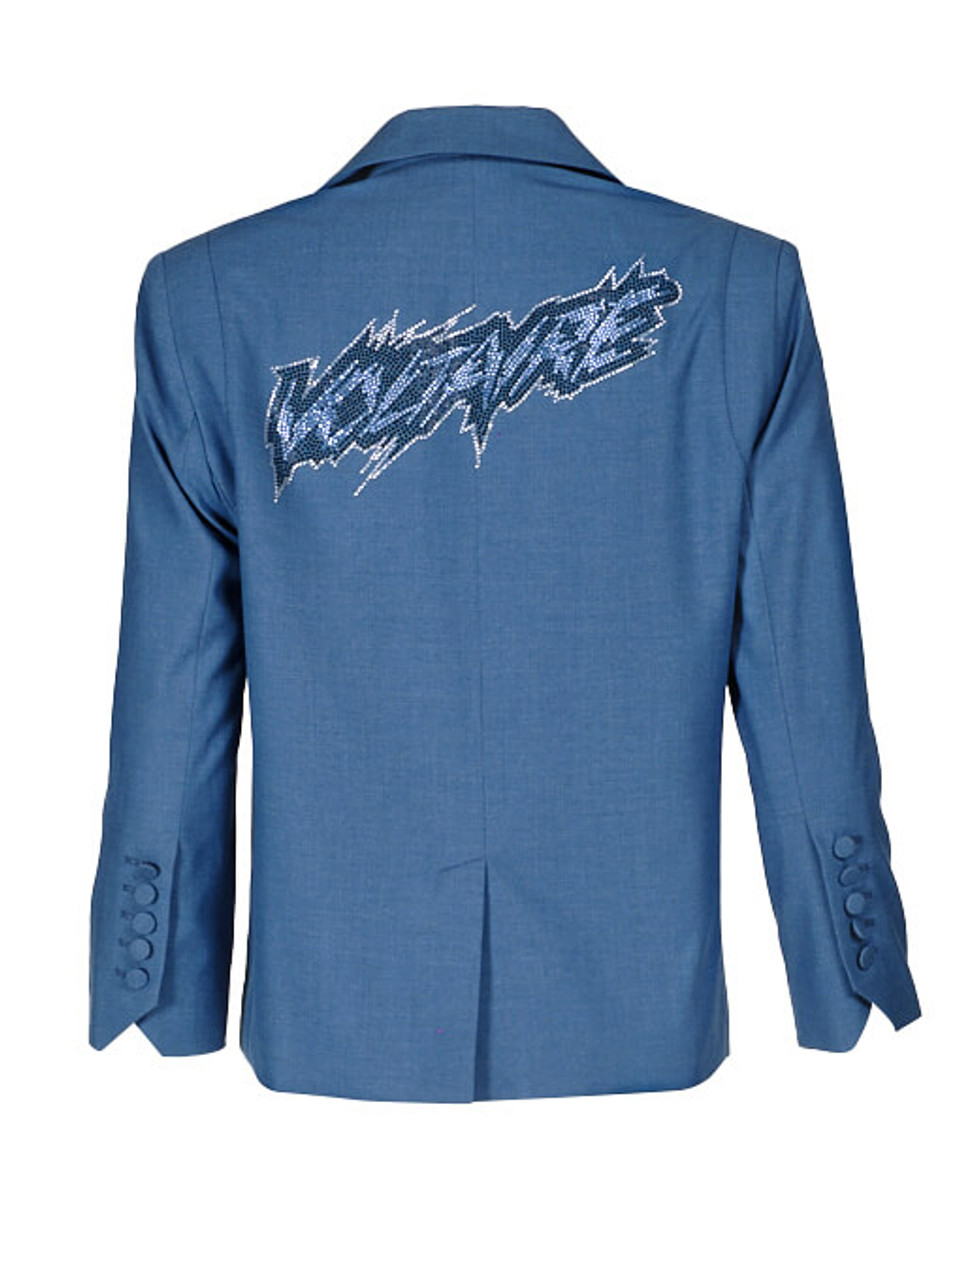 Women Zadig & Voltaire Voltaire Classic Blazer -  Blue Size M FR 38 US 6